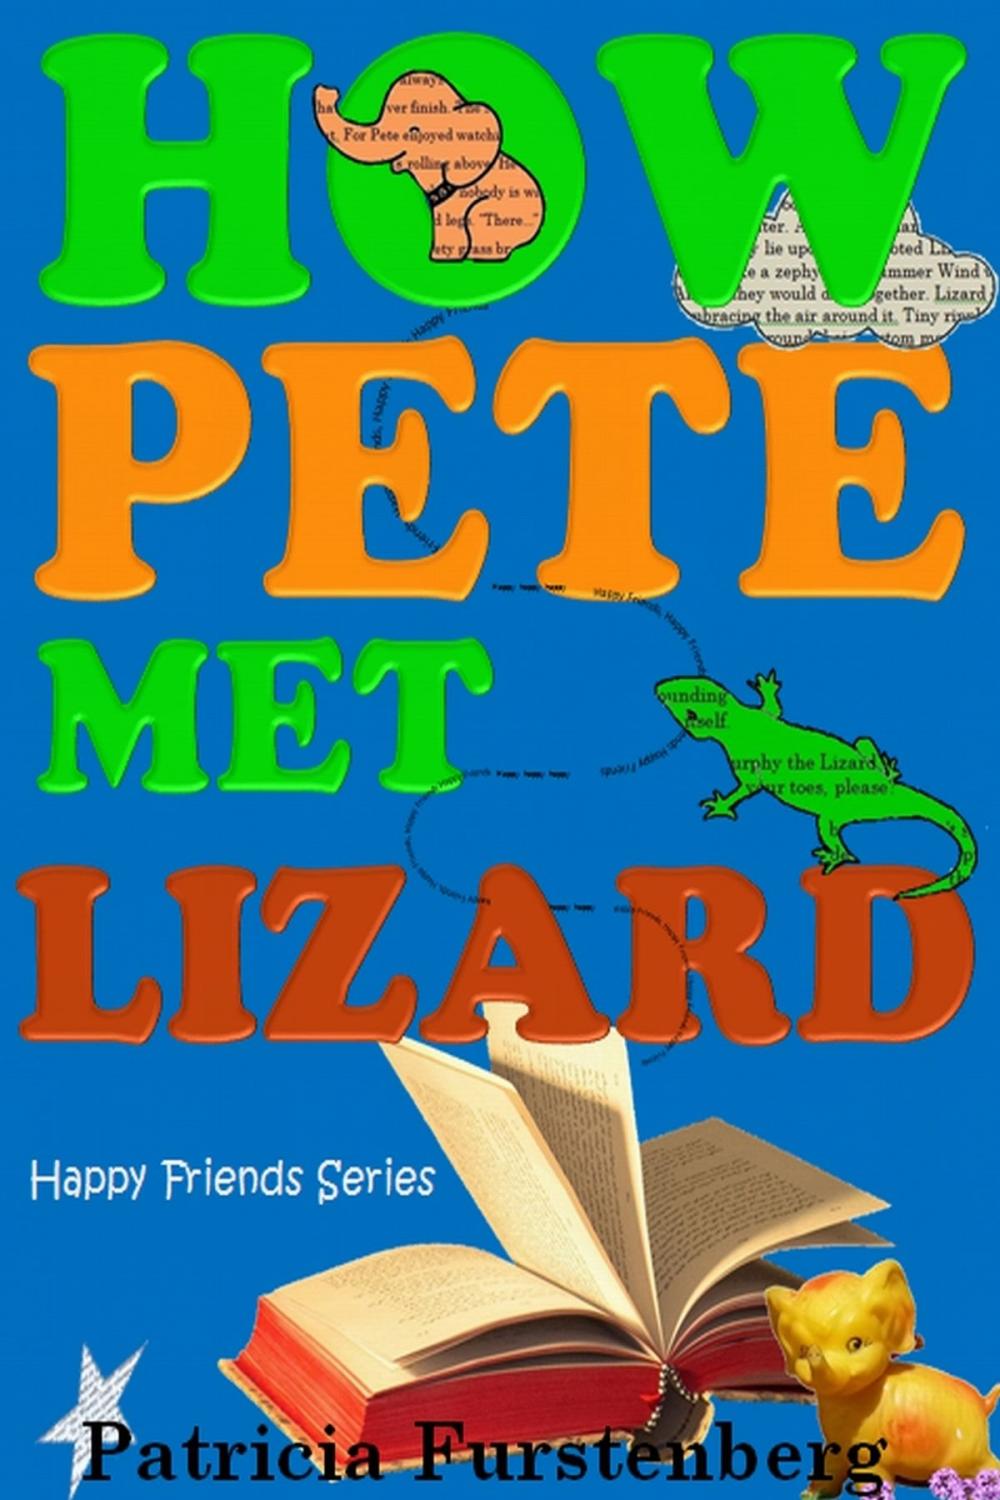 Big bigCover of How Pete met Lizard, Happy Friends Series